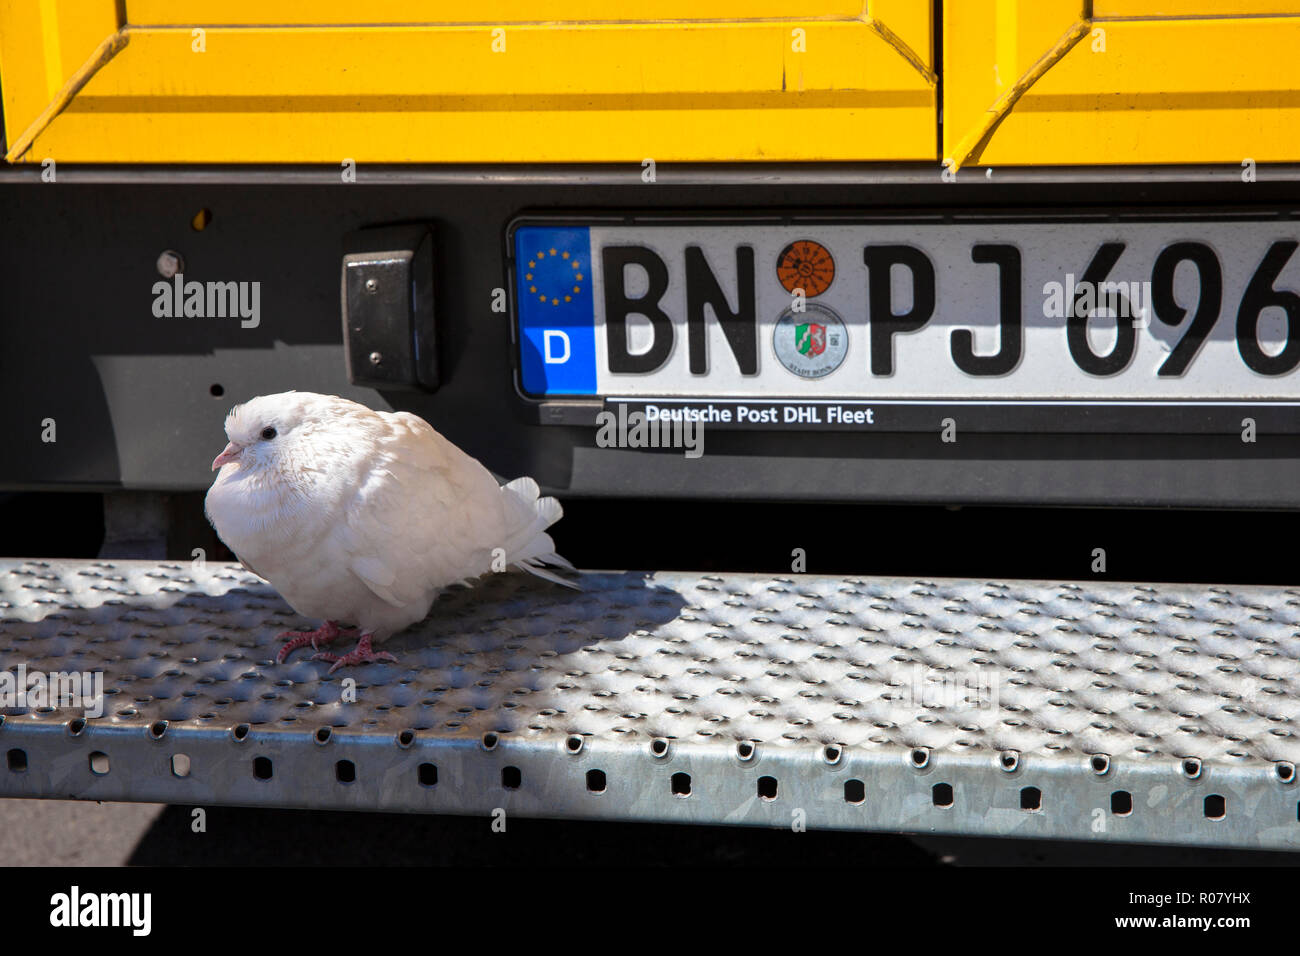 Un piccione bianco è seduto sulla pedana di una parcella di DHL veicolo di servizio, Colonia, Germania. eine Weisse Taube sitzt auf dem Trittbrett eines DHL- F Foto Stock